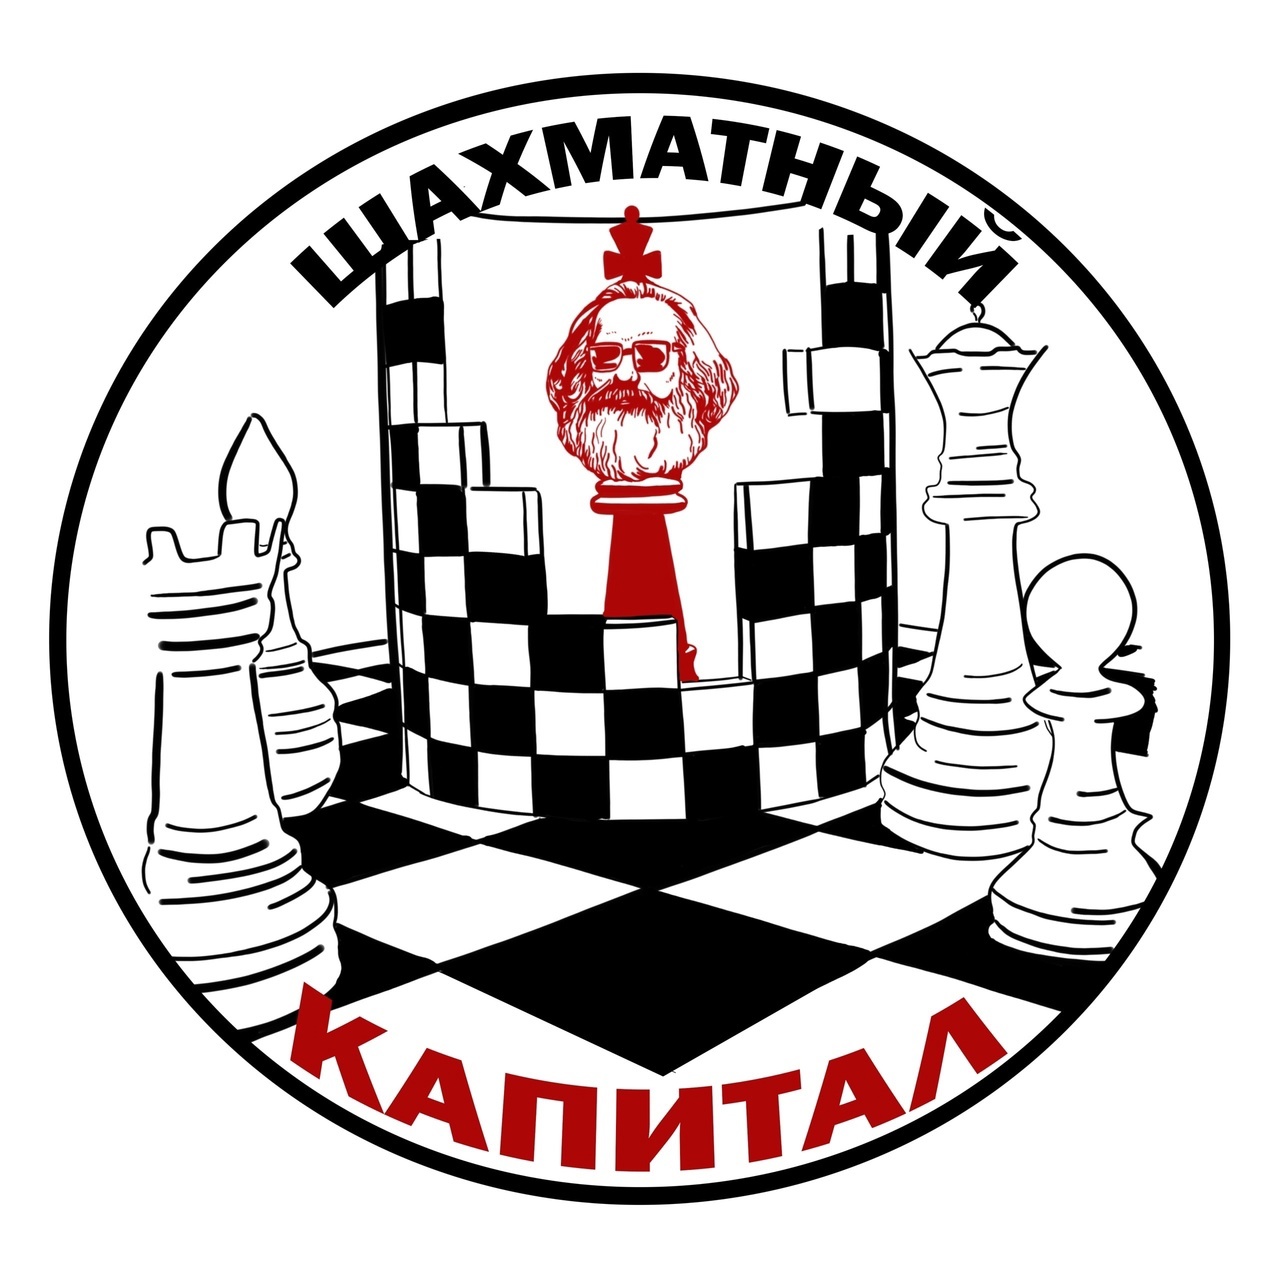 Шахматный клуб логотип. Шахматный клуб Кашира. Шахматный клуб в Ереване. Шахматный клуб Майкоп. Сайты шахматных клубов